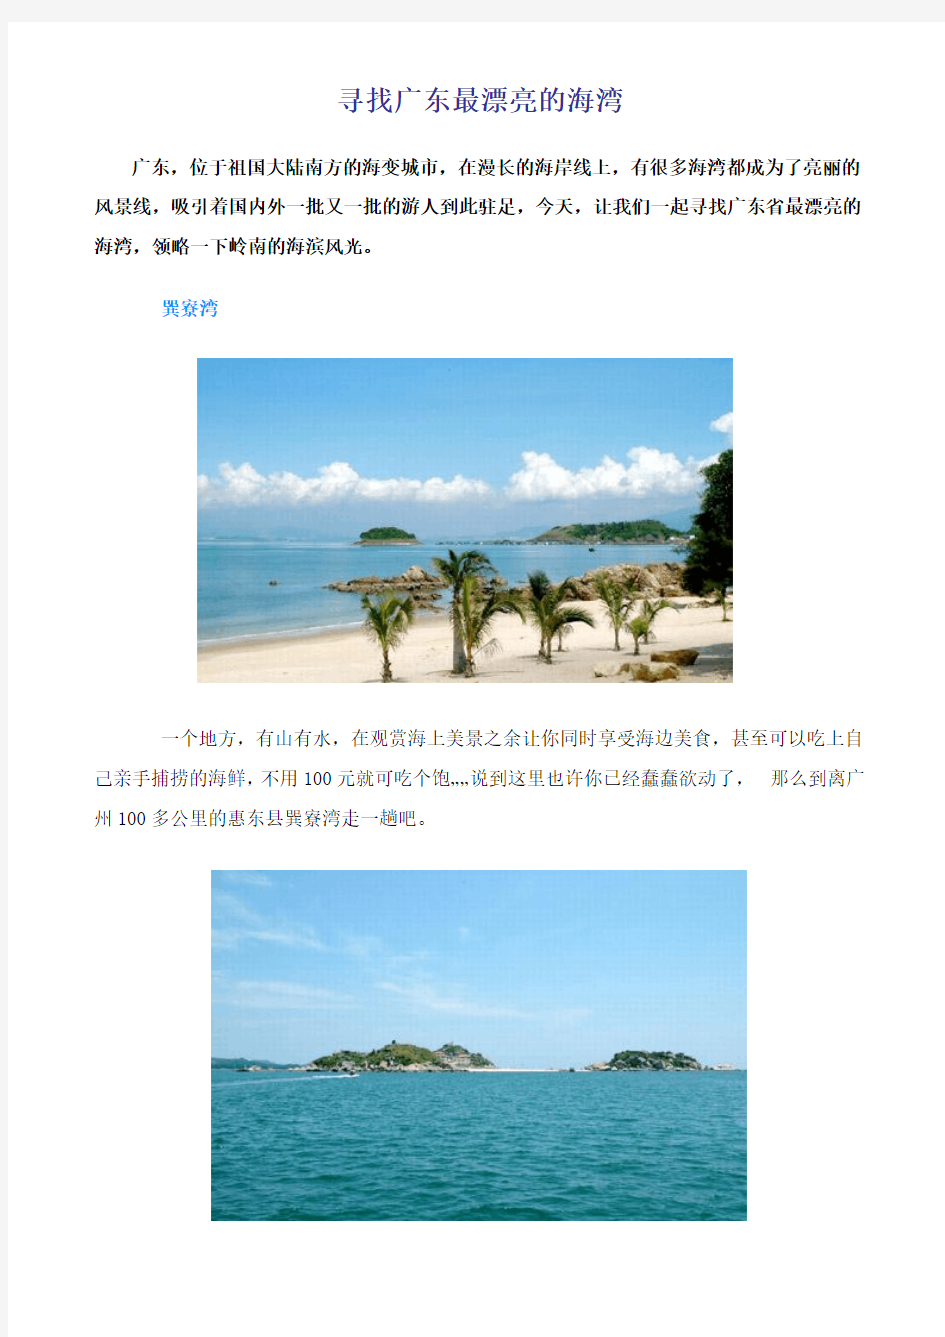 寻找广东最漂亮的海湾